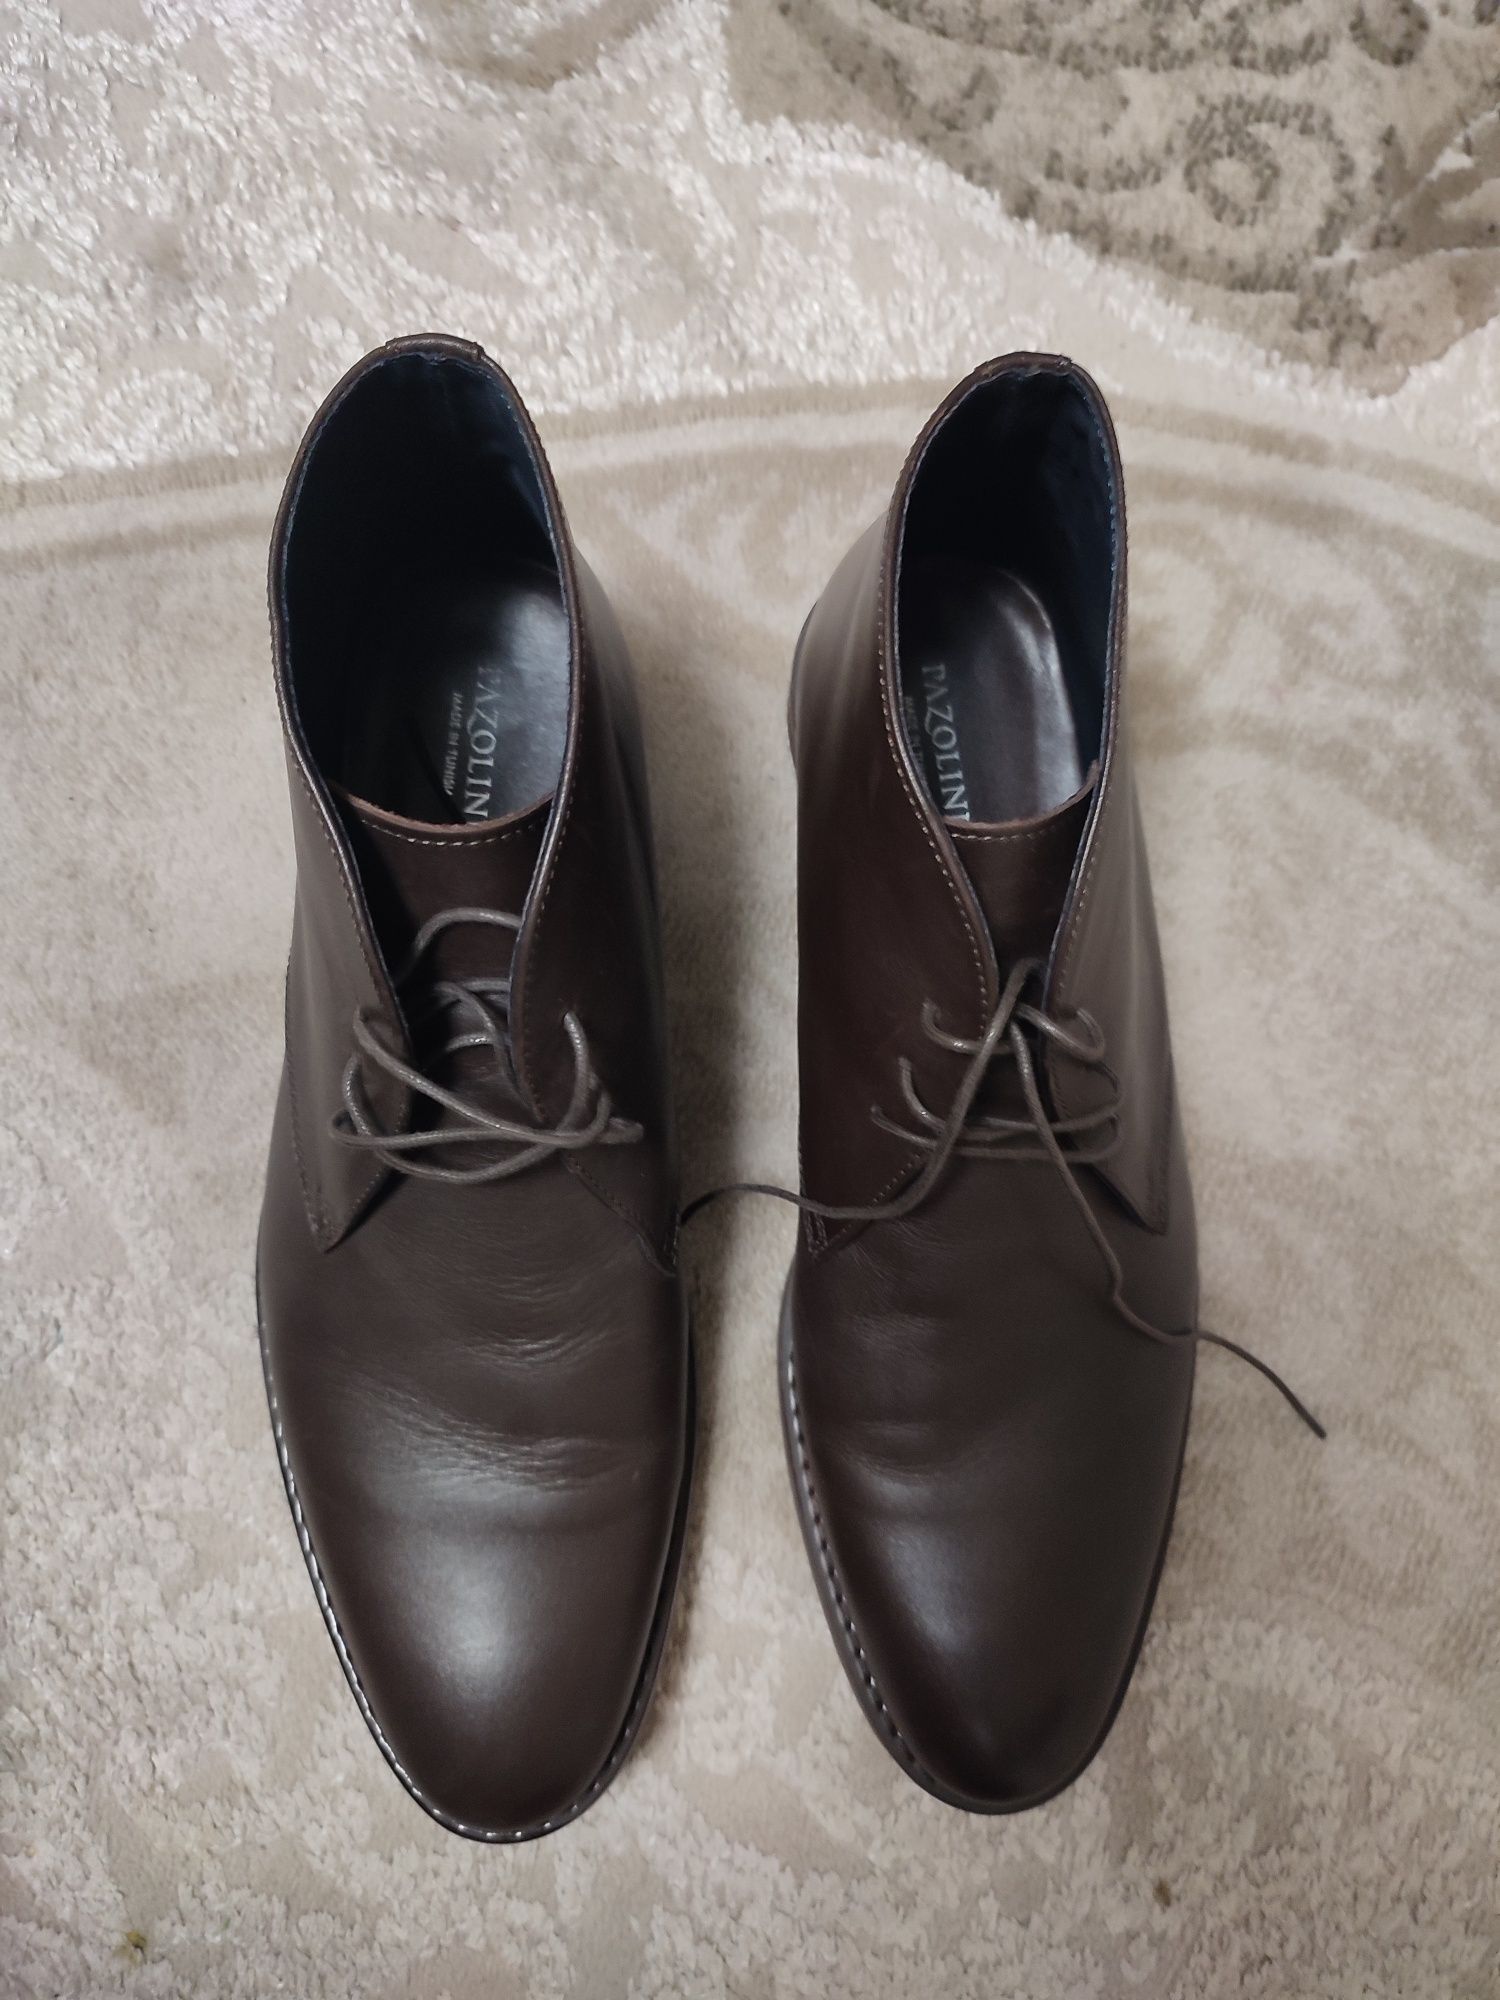 Мужская обувь 46 размер (ботинки)